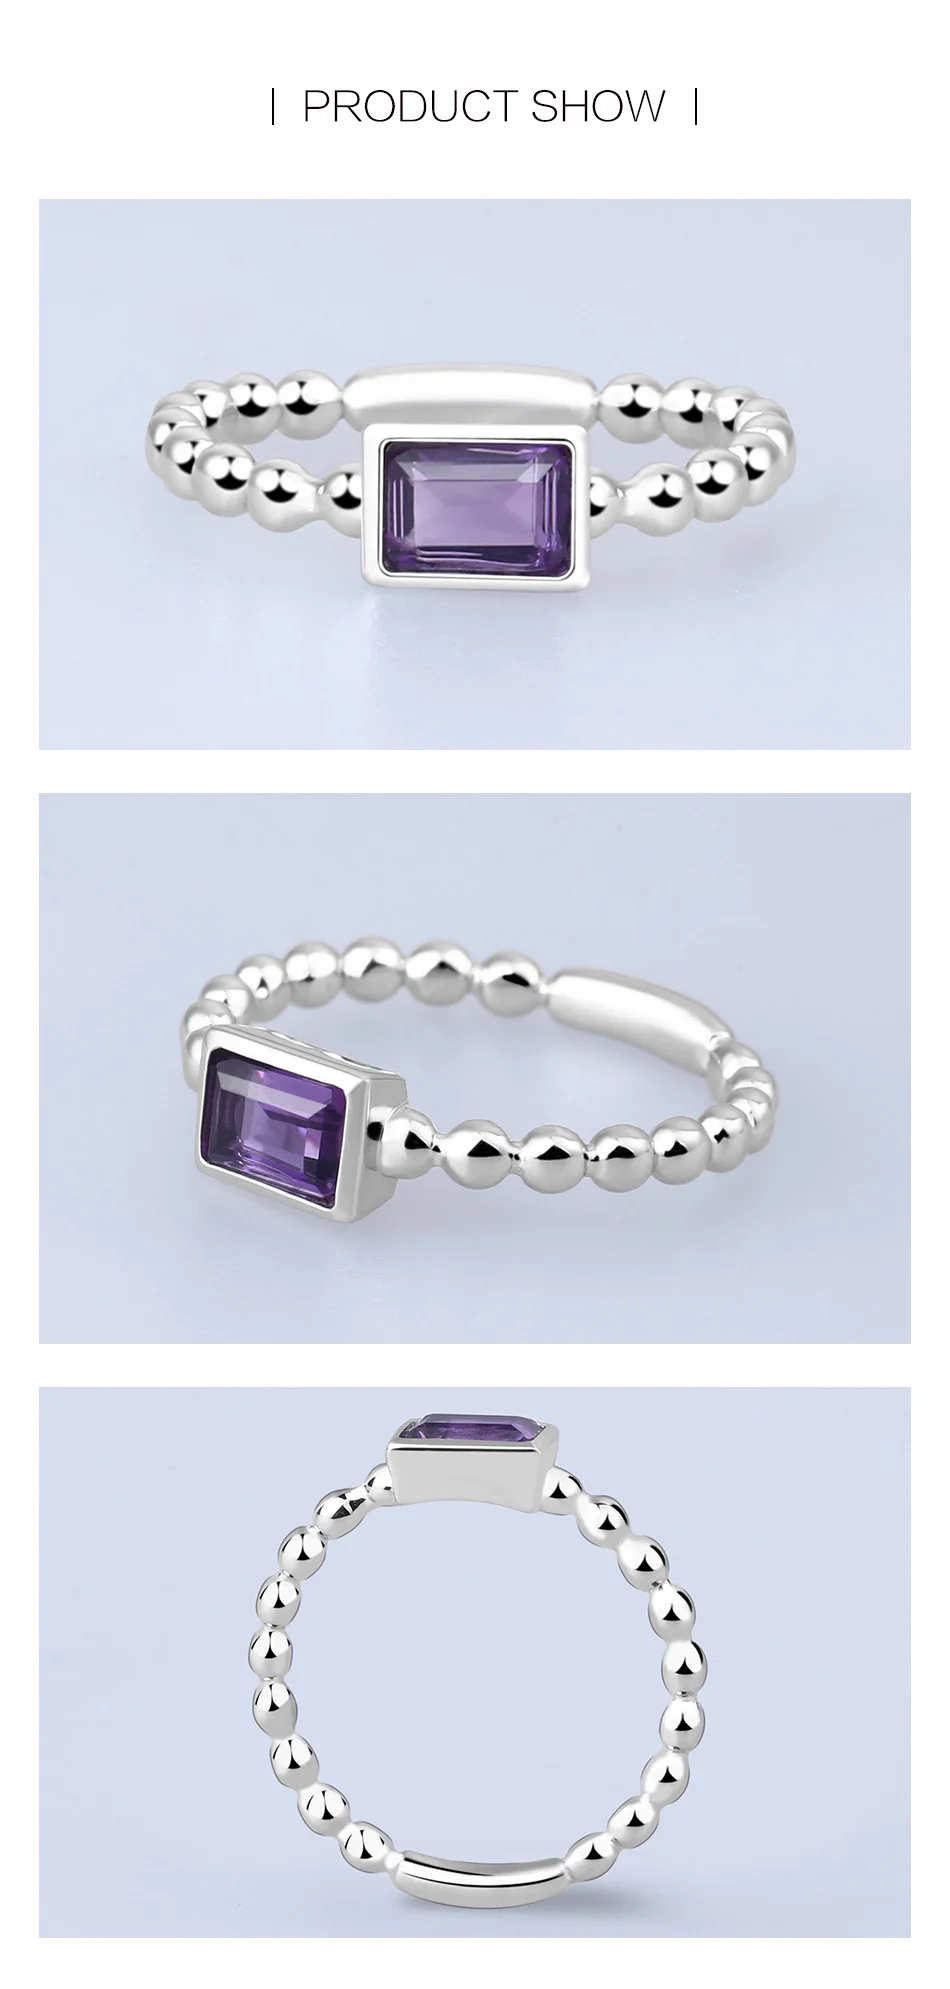 GEM'S BALLET, 0.58Ct, натуральный Фиолетовый аметист, драгоценный камень, кольца, 925 пробы, серебро, трендовые, классические, для помолвки, хорошее ювелирное изделие для женщин